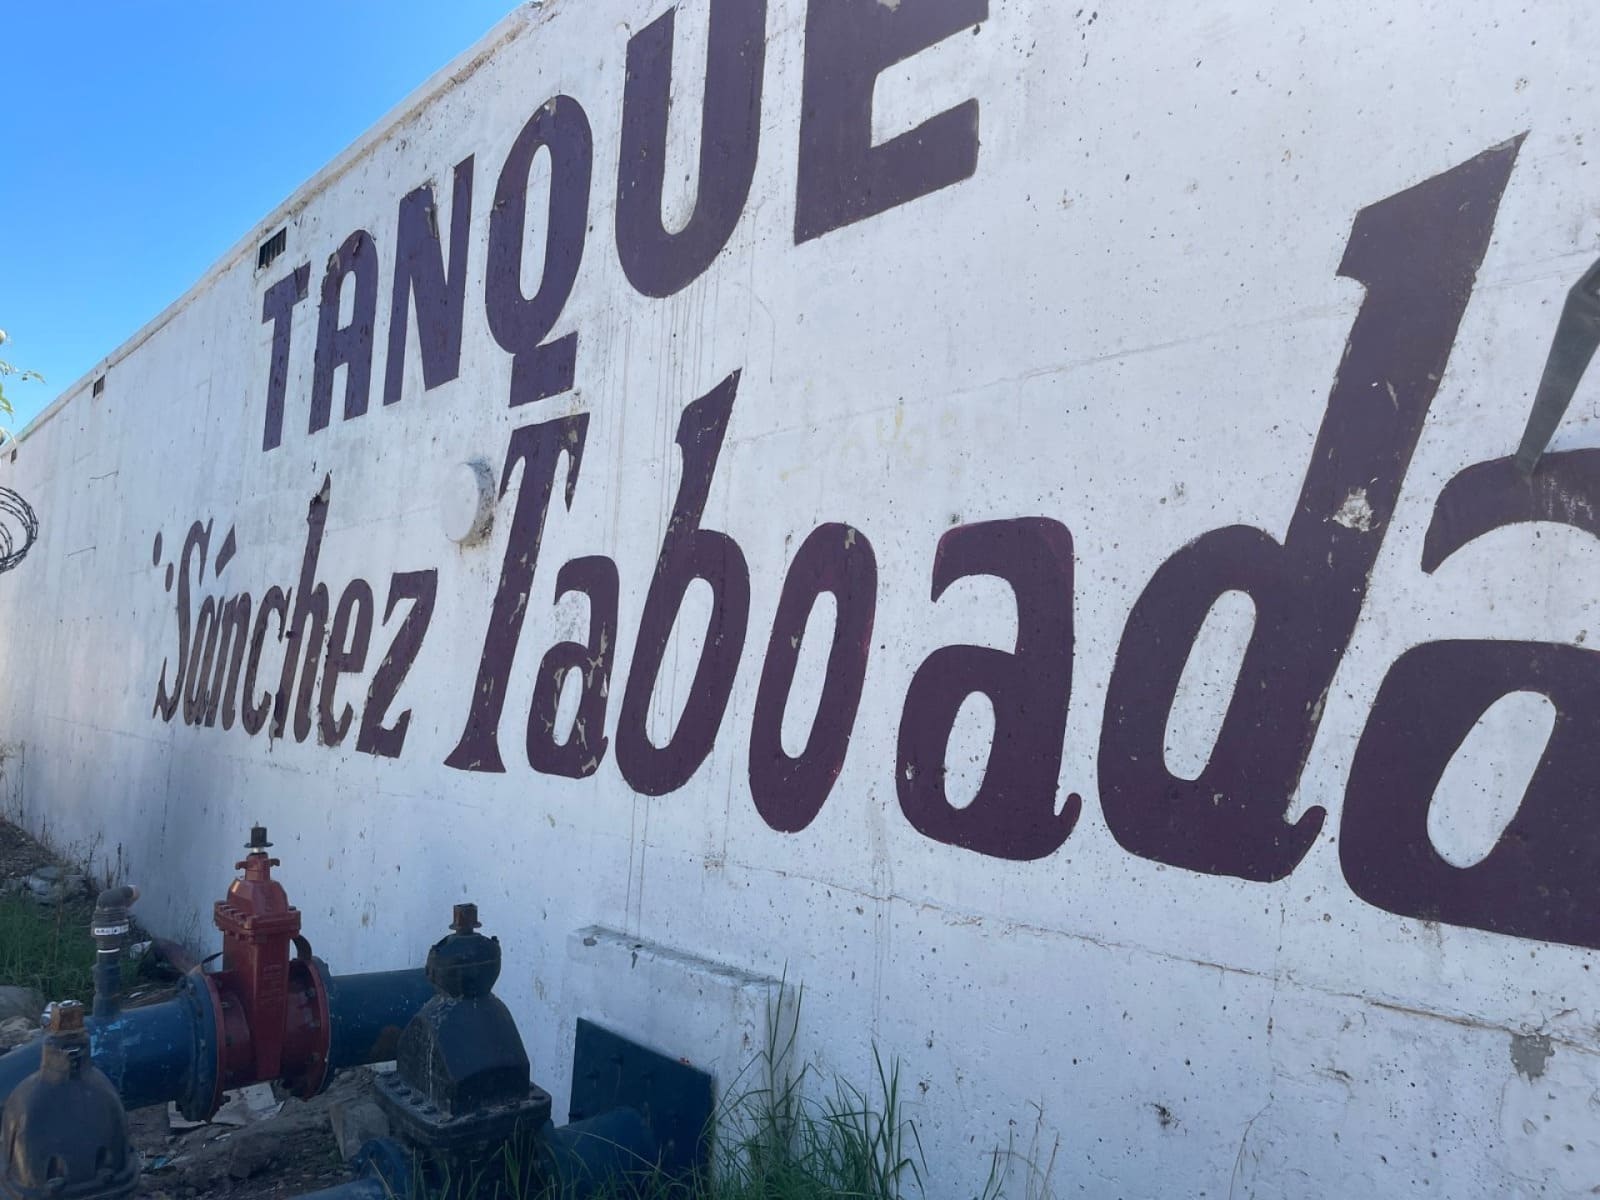 TRABAJA CESPT EN LA SEGUNDA FASE DE REHABILITACIÓN DEL TANQUE SÁNCHEZ TABOADA